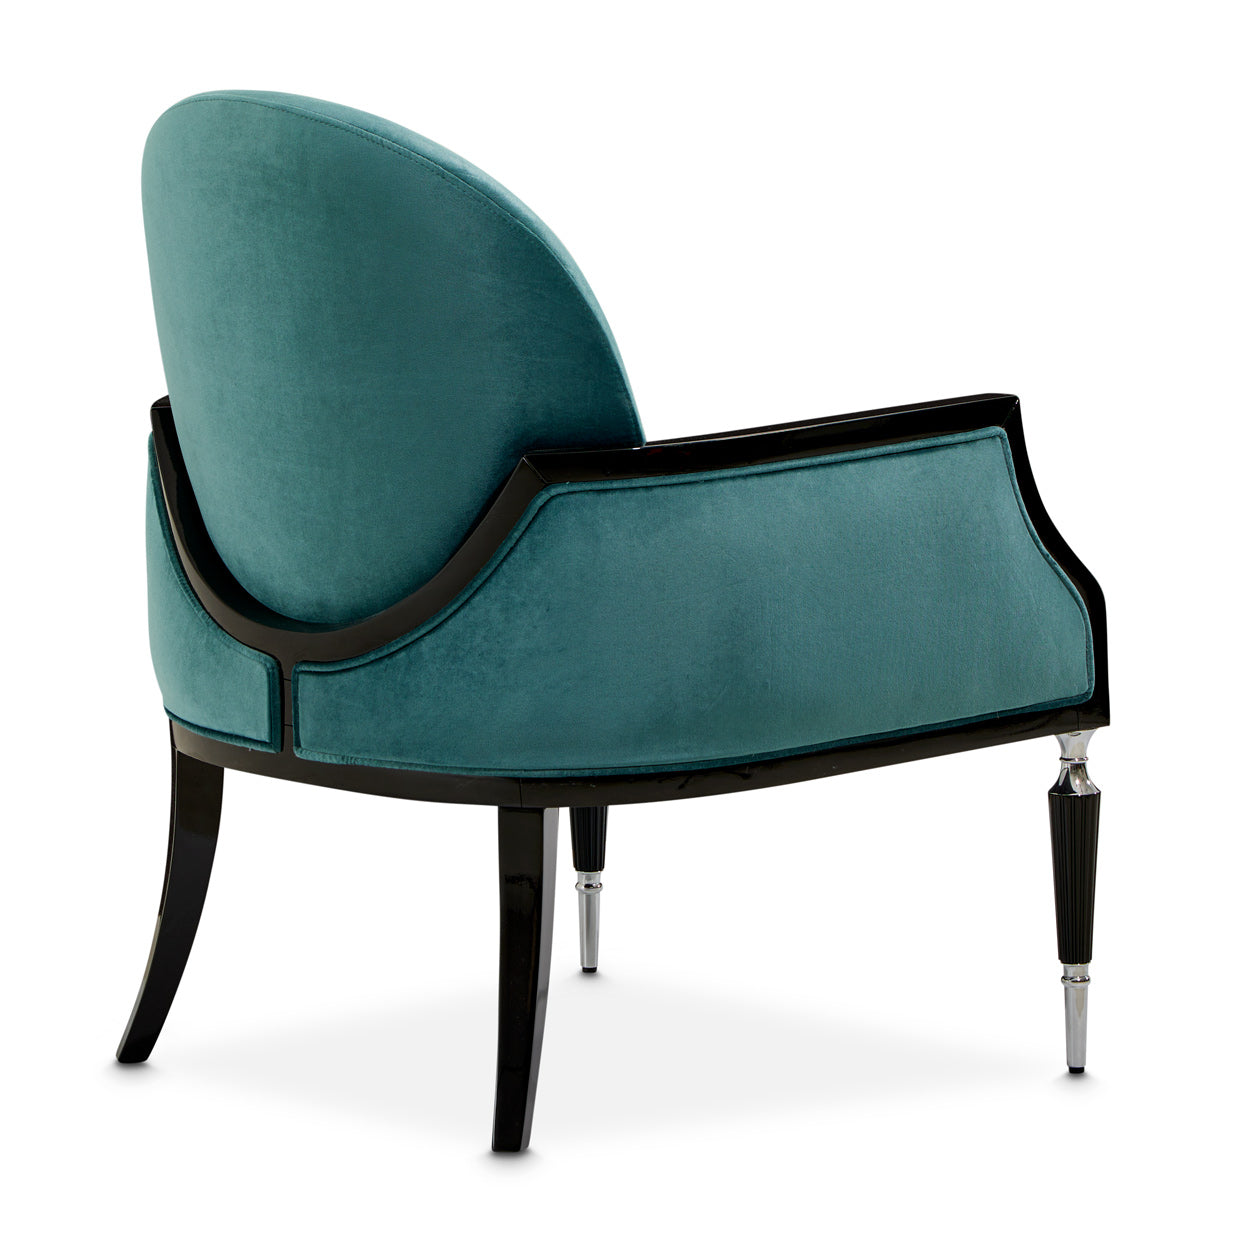 Accent Chair,Azure Black,  L'art de vivre, Sophistication, Exquisite piece, Home décor, Refinement, Elegance, Style, Interior design, Living space, dream art , Michael amini